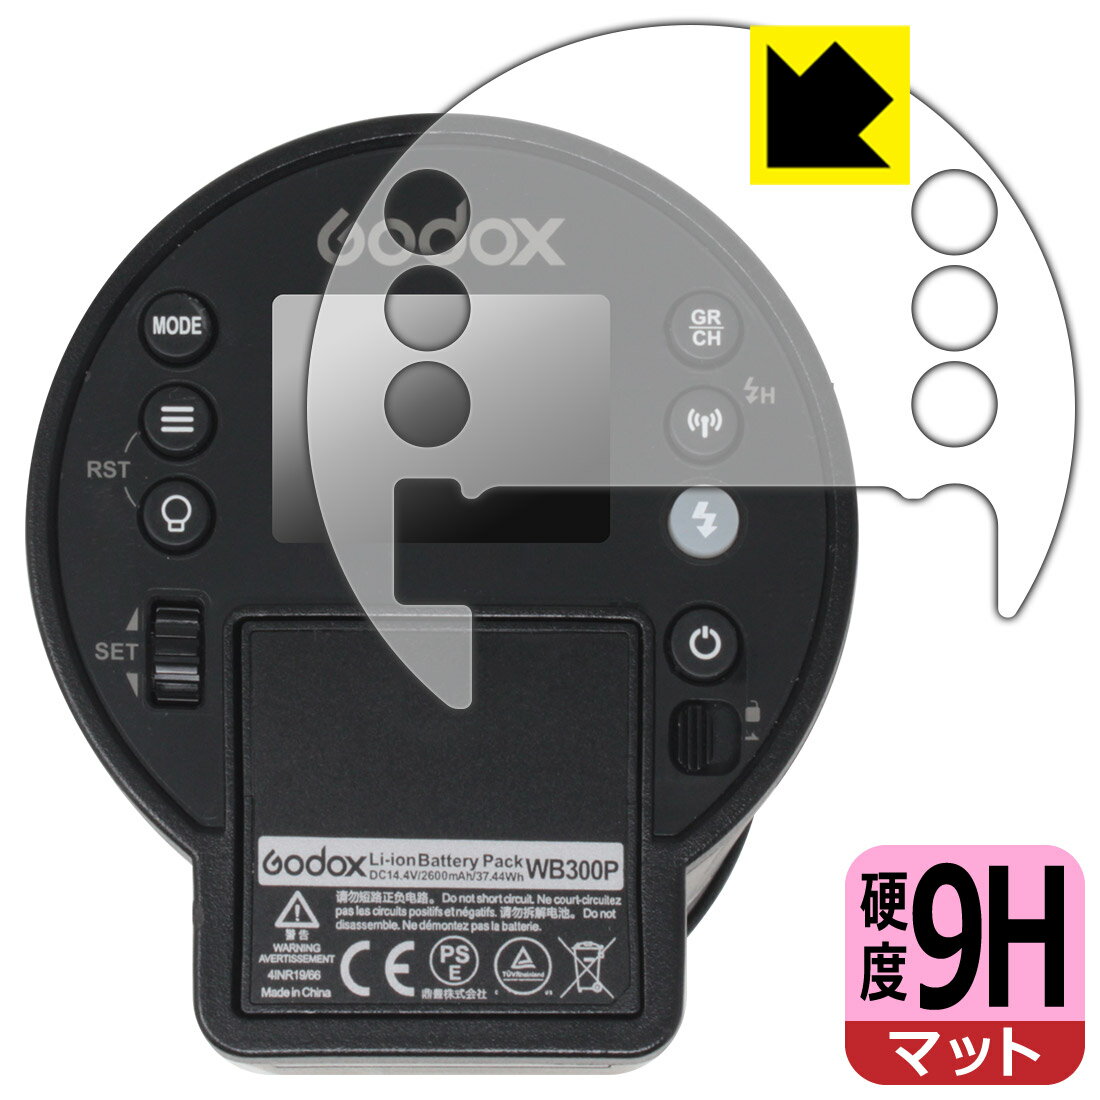 対応機種●対応機種 : GODOX アウトドアフラッシュ AD300 Pro専用の商品です。●製品内容 : 背面操作部用フィルム1枚・クリーニングワイプ1個●柔軟性があり、ガラスフィルムのように衝撃を受けても割れない！スリキズ防止にもなる『9H高硬度(非光沢)の保護フィルム』●安心の国産素材を使用。日本国内の自社工場で製造し出荷しています。 ★貼り付け失敗交換サービス対象商品★ 国内自社工場製造・発送だからできる 安心の製品保証とサポート ■製品保証 お届けした製品が誤っていたり、不具合があった場合などには、お届けから1ヶ月以内にメールにてお問い合わせください。交換等対応させていただきます。[キャンセル・返品（返金・交換）について] ■■貼り付け失敗時の交換サービス■■貼り付けに失敗しても1回だけ無償交換ができます。(失敗したフィルムをお送りいただき、新品に無償交換します。往復の送料のみお客様にご負担をお願いいたします。詳しくは製品に同封の紙をご確認ください) ■■保護フィルム貼り付け代行サービス■■保護フィルムの貼り付け作業に自信がない方には、PDA工房で貼り付け作業を代行いたします。(PDA工房の保護フィルムのみが対象です。詳しくは製品に同封の紙をご確認ください) 9H高硬度【反射低減】保護フィルム 素材説明 ■表面硬度 9Hなのにしなやかなフィルム表面硬度はガラスフィルムと同等の9Hですが、しなやかな柔軟性がある「超ハードコートPETフィルム」なので衝撃を受けても割れません。厚みも一般的なガラスフィルムより薄い約0.2mmでタッチ操作の感度も良好です。(※1)※フィルムの性能（表面硬度 9H）は世界的な規模の検査/認証機関で試験されております。■画面の映り込みを抑える反射防止タイプ！表面に微細な凹凸を作ることにより、外光を乱反射させギラツキを抑える「アンチグレア加工」がされております。屋外での太陽光の映り込み、屋内でも蛍光灯などの映り込みが気になるシーンが多い方におすすめです。また、指紋がついた場合でも目立ちにくいという特長があります。■指紋が目立ちにくい上、フッ素加工で汚れがつきにくい！反射防止のアンチグレア加工で指紋が目立ちにくい上、表面はフッ素コーティングがされており、皮脂や汚れがつきにくく、また、落ちやすくなっています。指滑りはさらさらな使用感です■気泡の入りにくい特殊な自己吸着タイプ接着面は気泡の入りにくい特殊な自己吸着タイプです。素材に柔軟性があり、貼り付け作業も簡単にできます。また、はがすときにガラス製フィルムのように割れてしまうことはありません。貼り直しが何度でもできるので、正しい位置へ貼り付けられるまでやり直すことができます。■安心の日本製最高級グレードの国産素材を日本国内の弊社工場で加工している完全な Made in Japan です。安心の品質をお届けします。※1「表面硬度 9H」の表示は素材として使用しているフィルムの性能です。機器に貼り付けた状態の測定結果ではありません。 【ポスト投函送料無料】商品は【ポスト投函発送 (追跡可能メール便)】で発送します。お急ぎ、配達日時を指定されたい方は以下のクーポンを同時購入ください。【お急ぎ便クーポン】　プラス110円(税込)で速達扱いでの発送。お届けはポストへの投函となります。【配達日時指定クーポン】　プラス550円(税込)で配達日時を指定し、宅配便で発送させていただきます。【お急ぎ便クーポン】はこちらをクリック【配達日時指定クーポン】はこちらをクリック